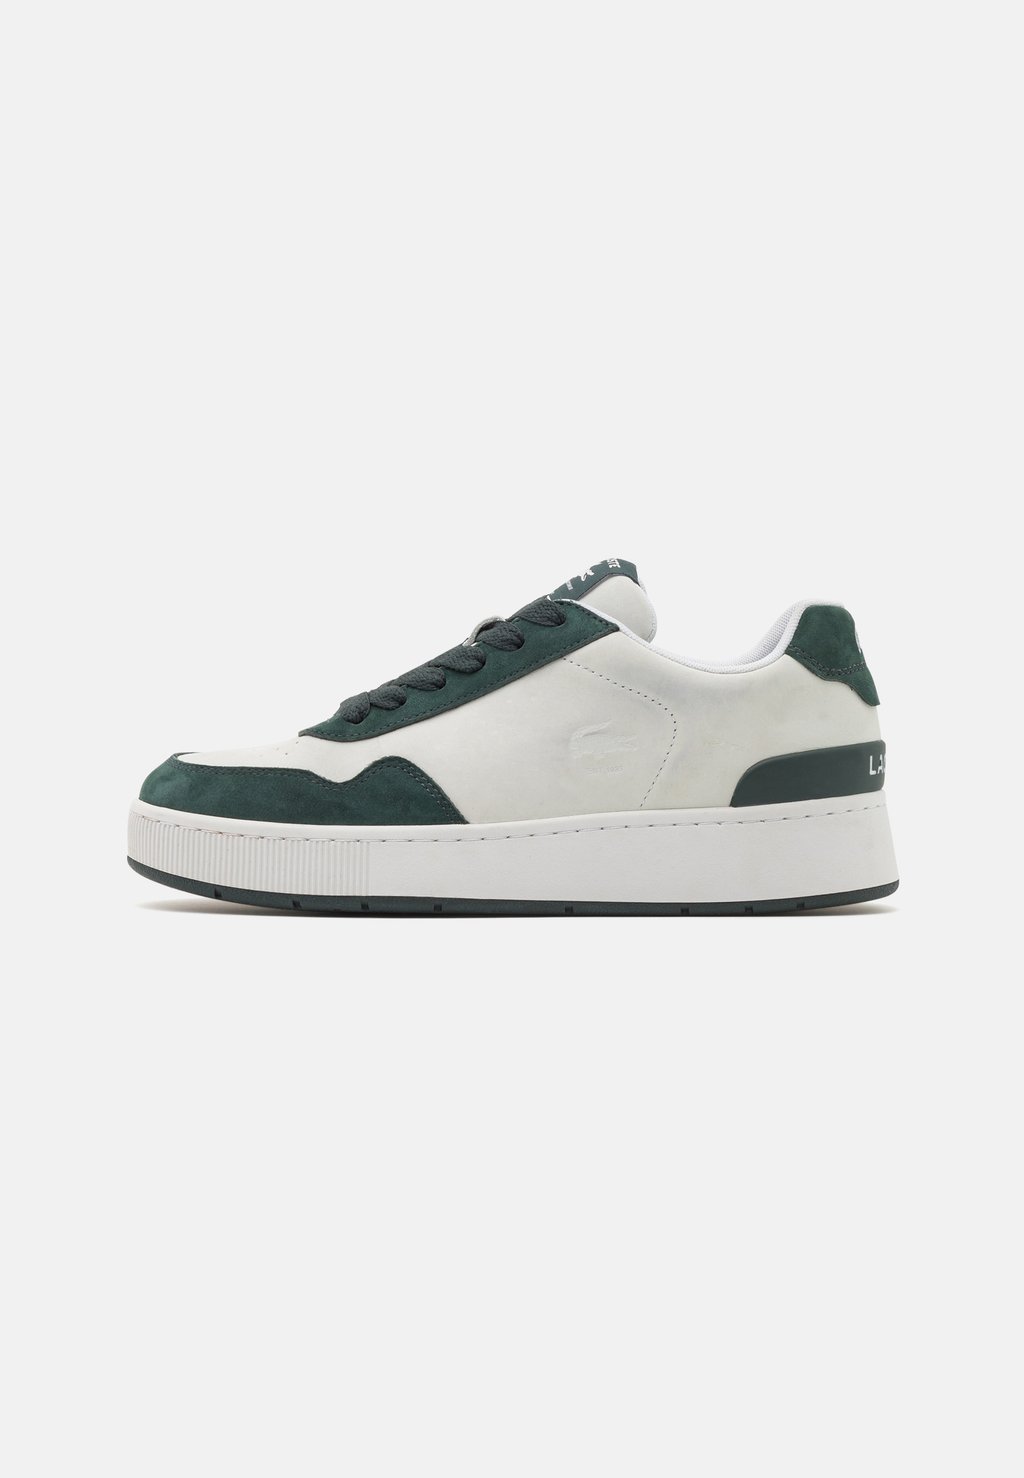 Низкие кроссовки ACE CLIP Lacoste, белый/темно-зеленый низкие кроссовки neo lacoste хаки темно зеленый